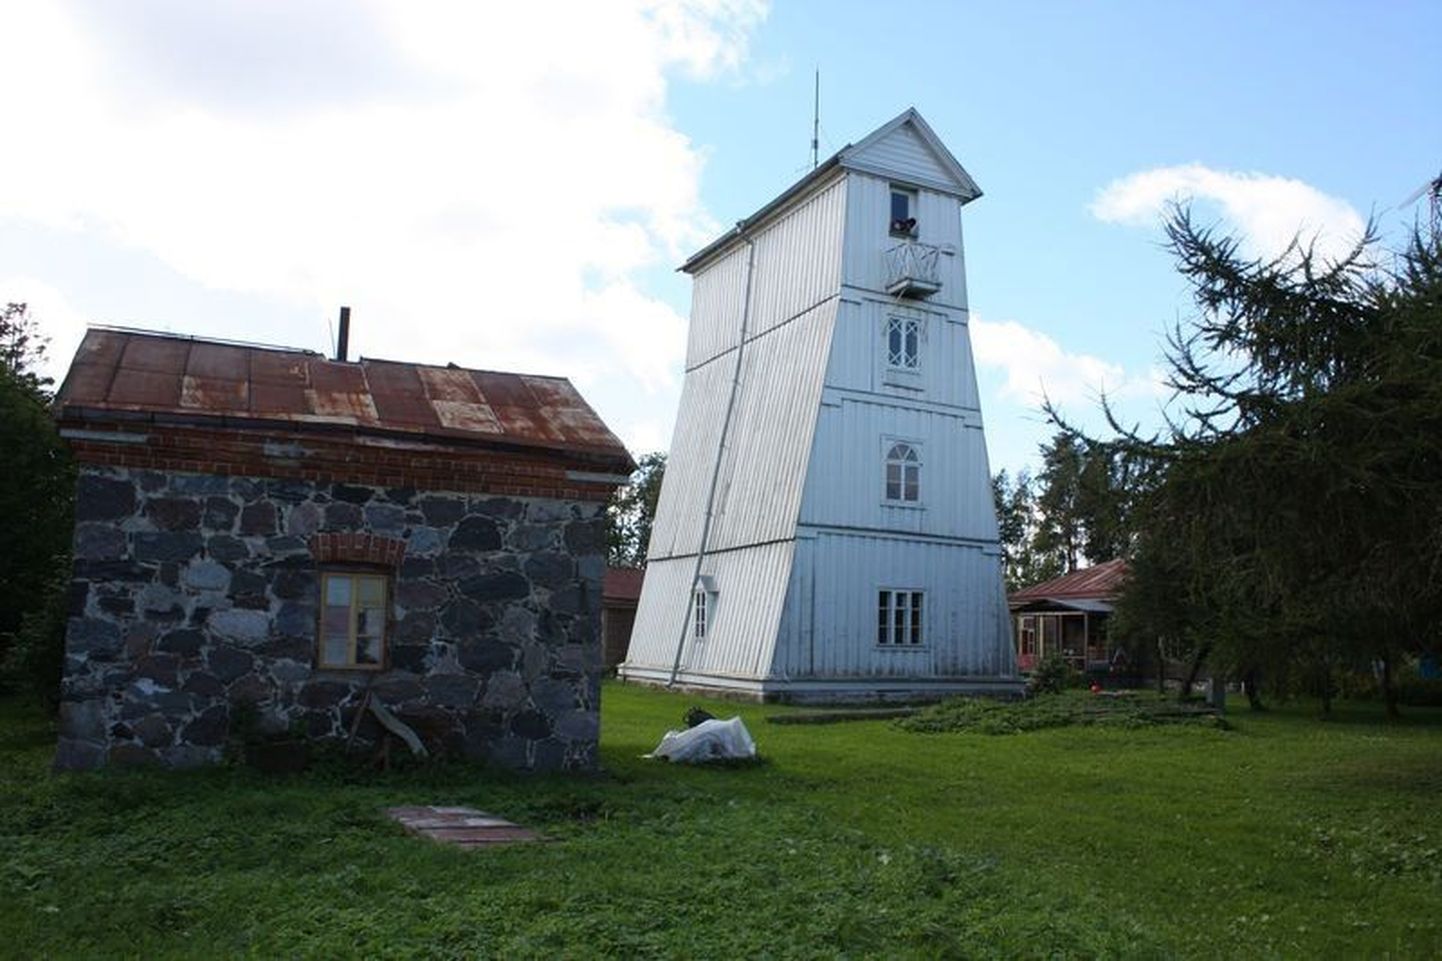 Нижний маяк Суурупи.